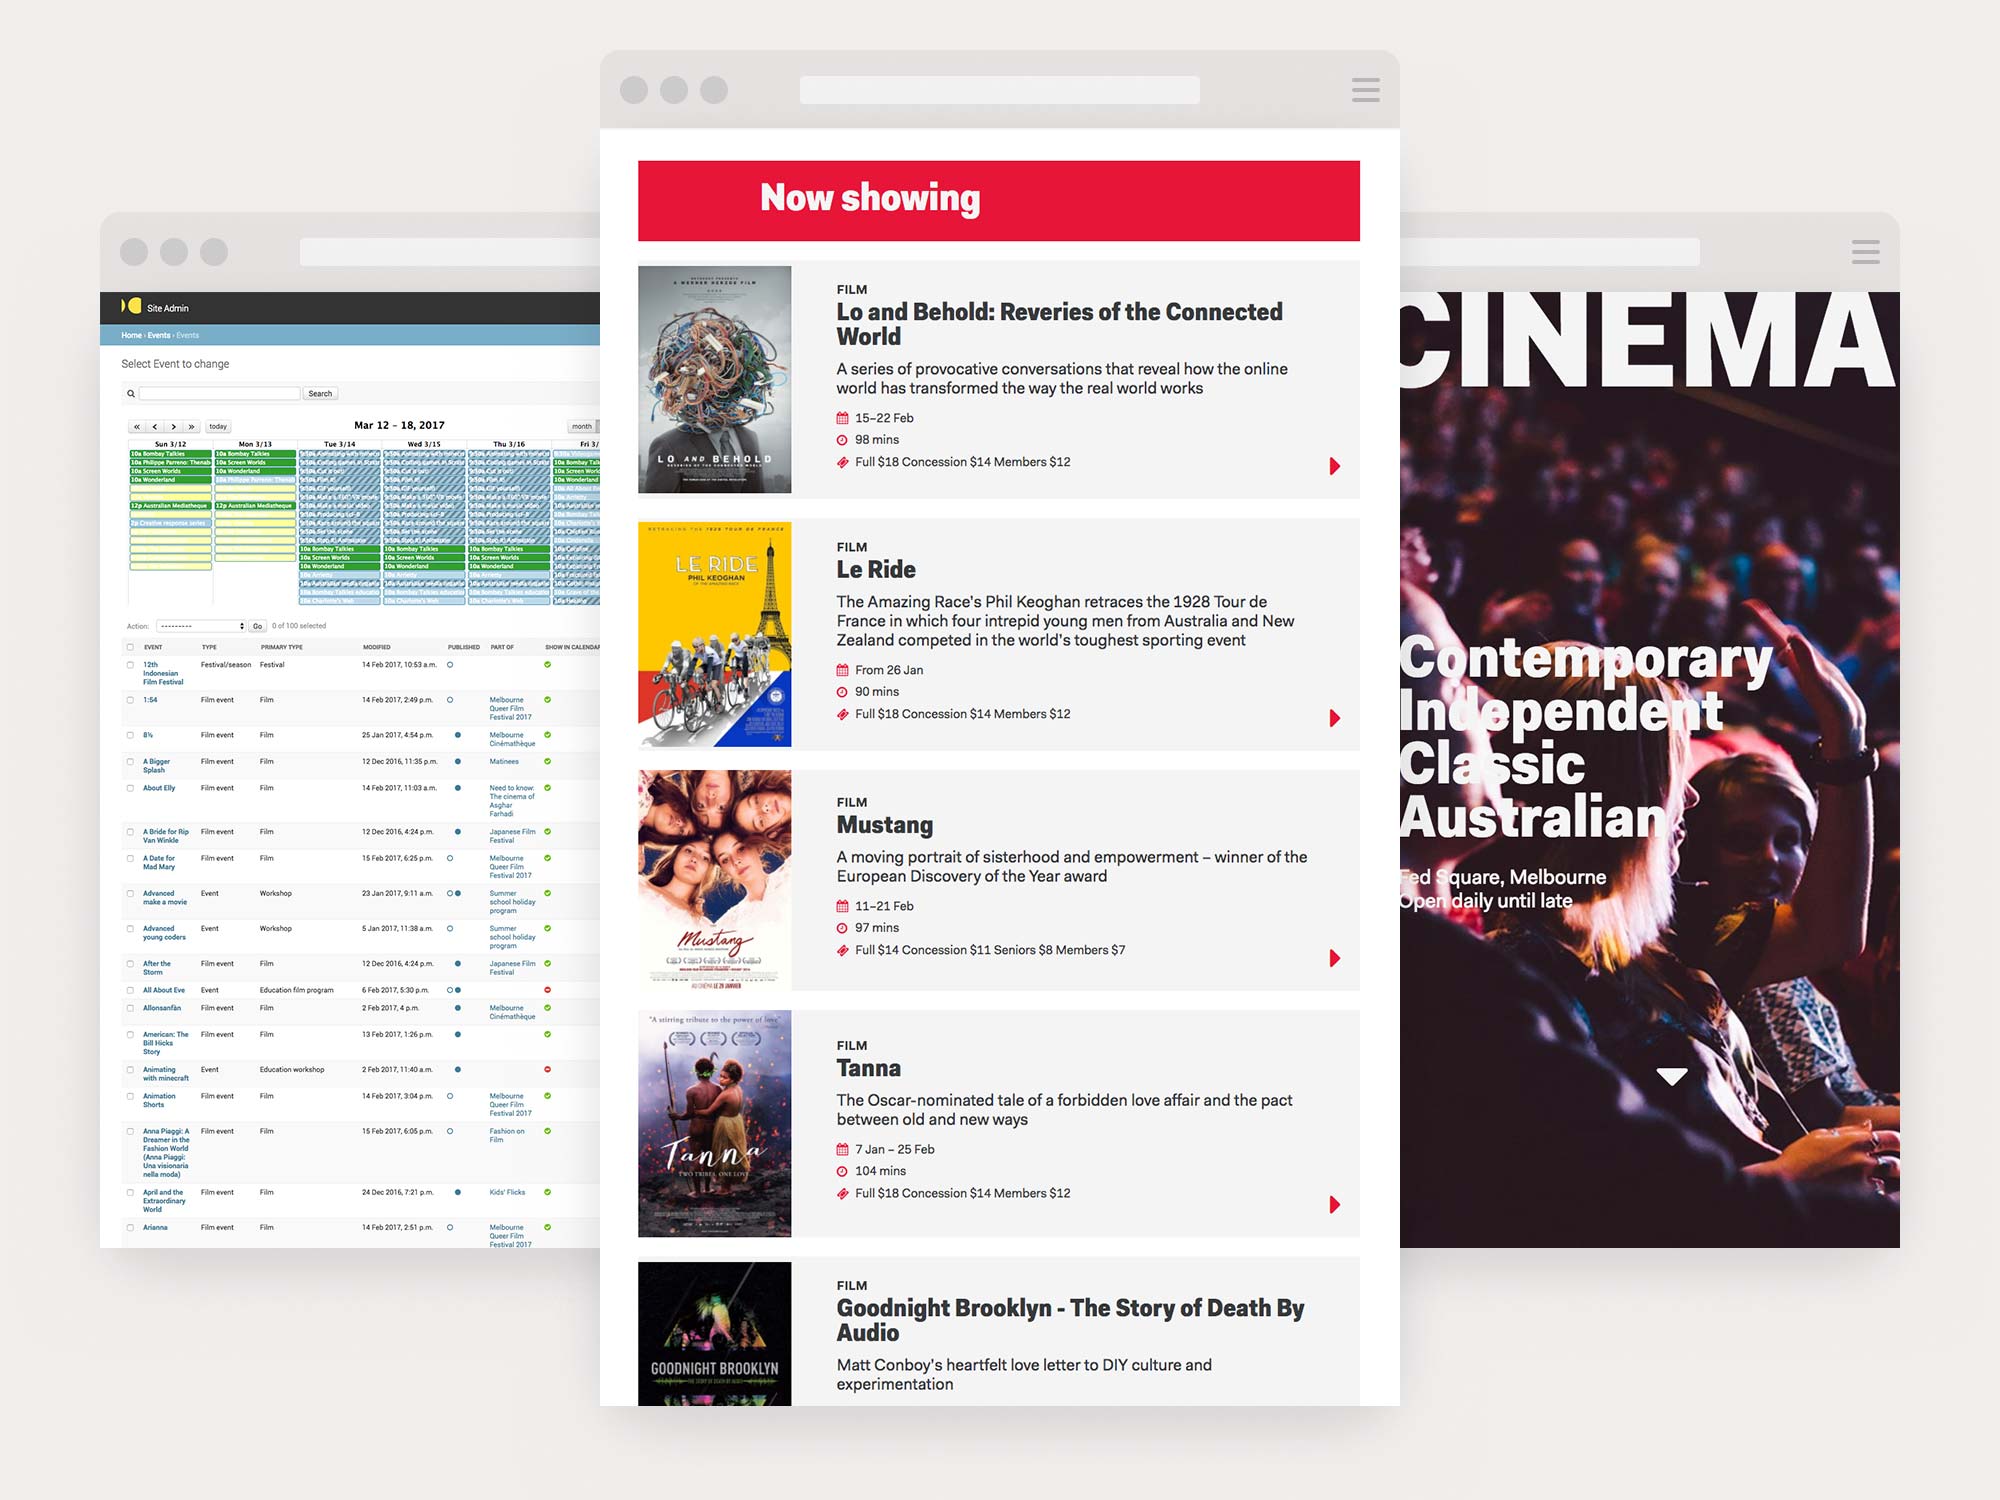 Screenshot of ACMI event calendar CMS and Cinema homepage